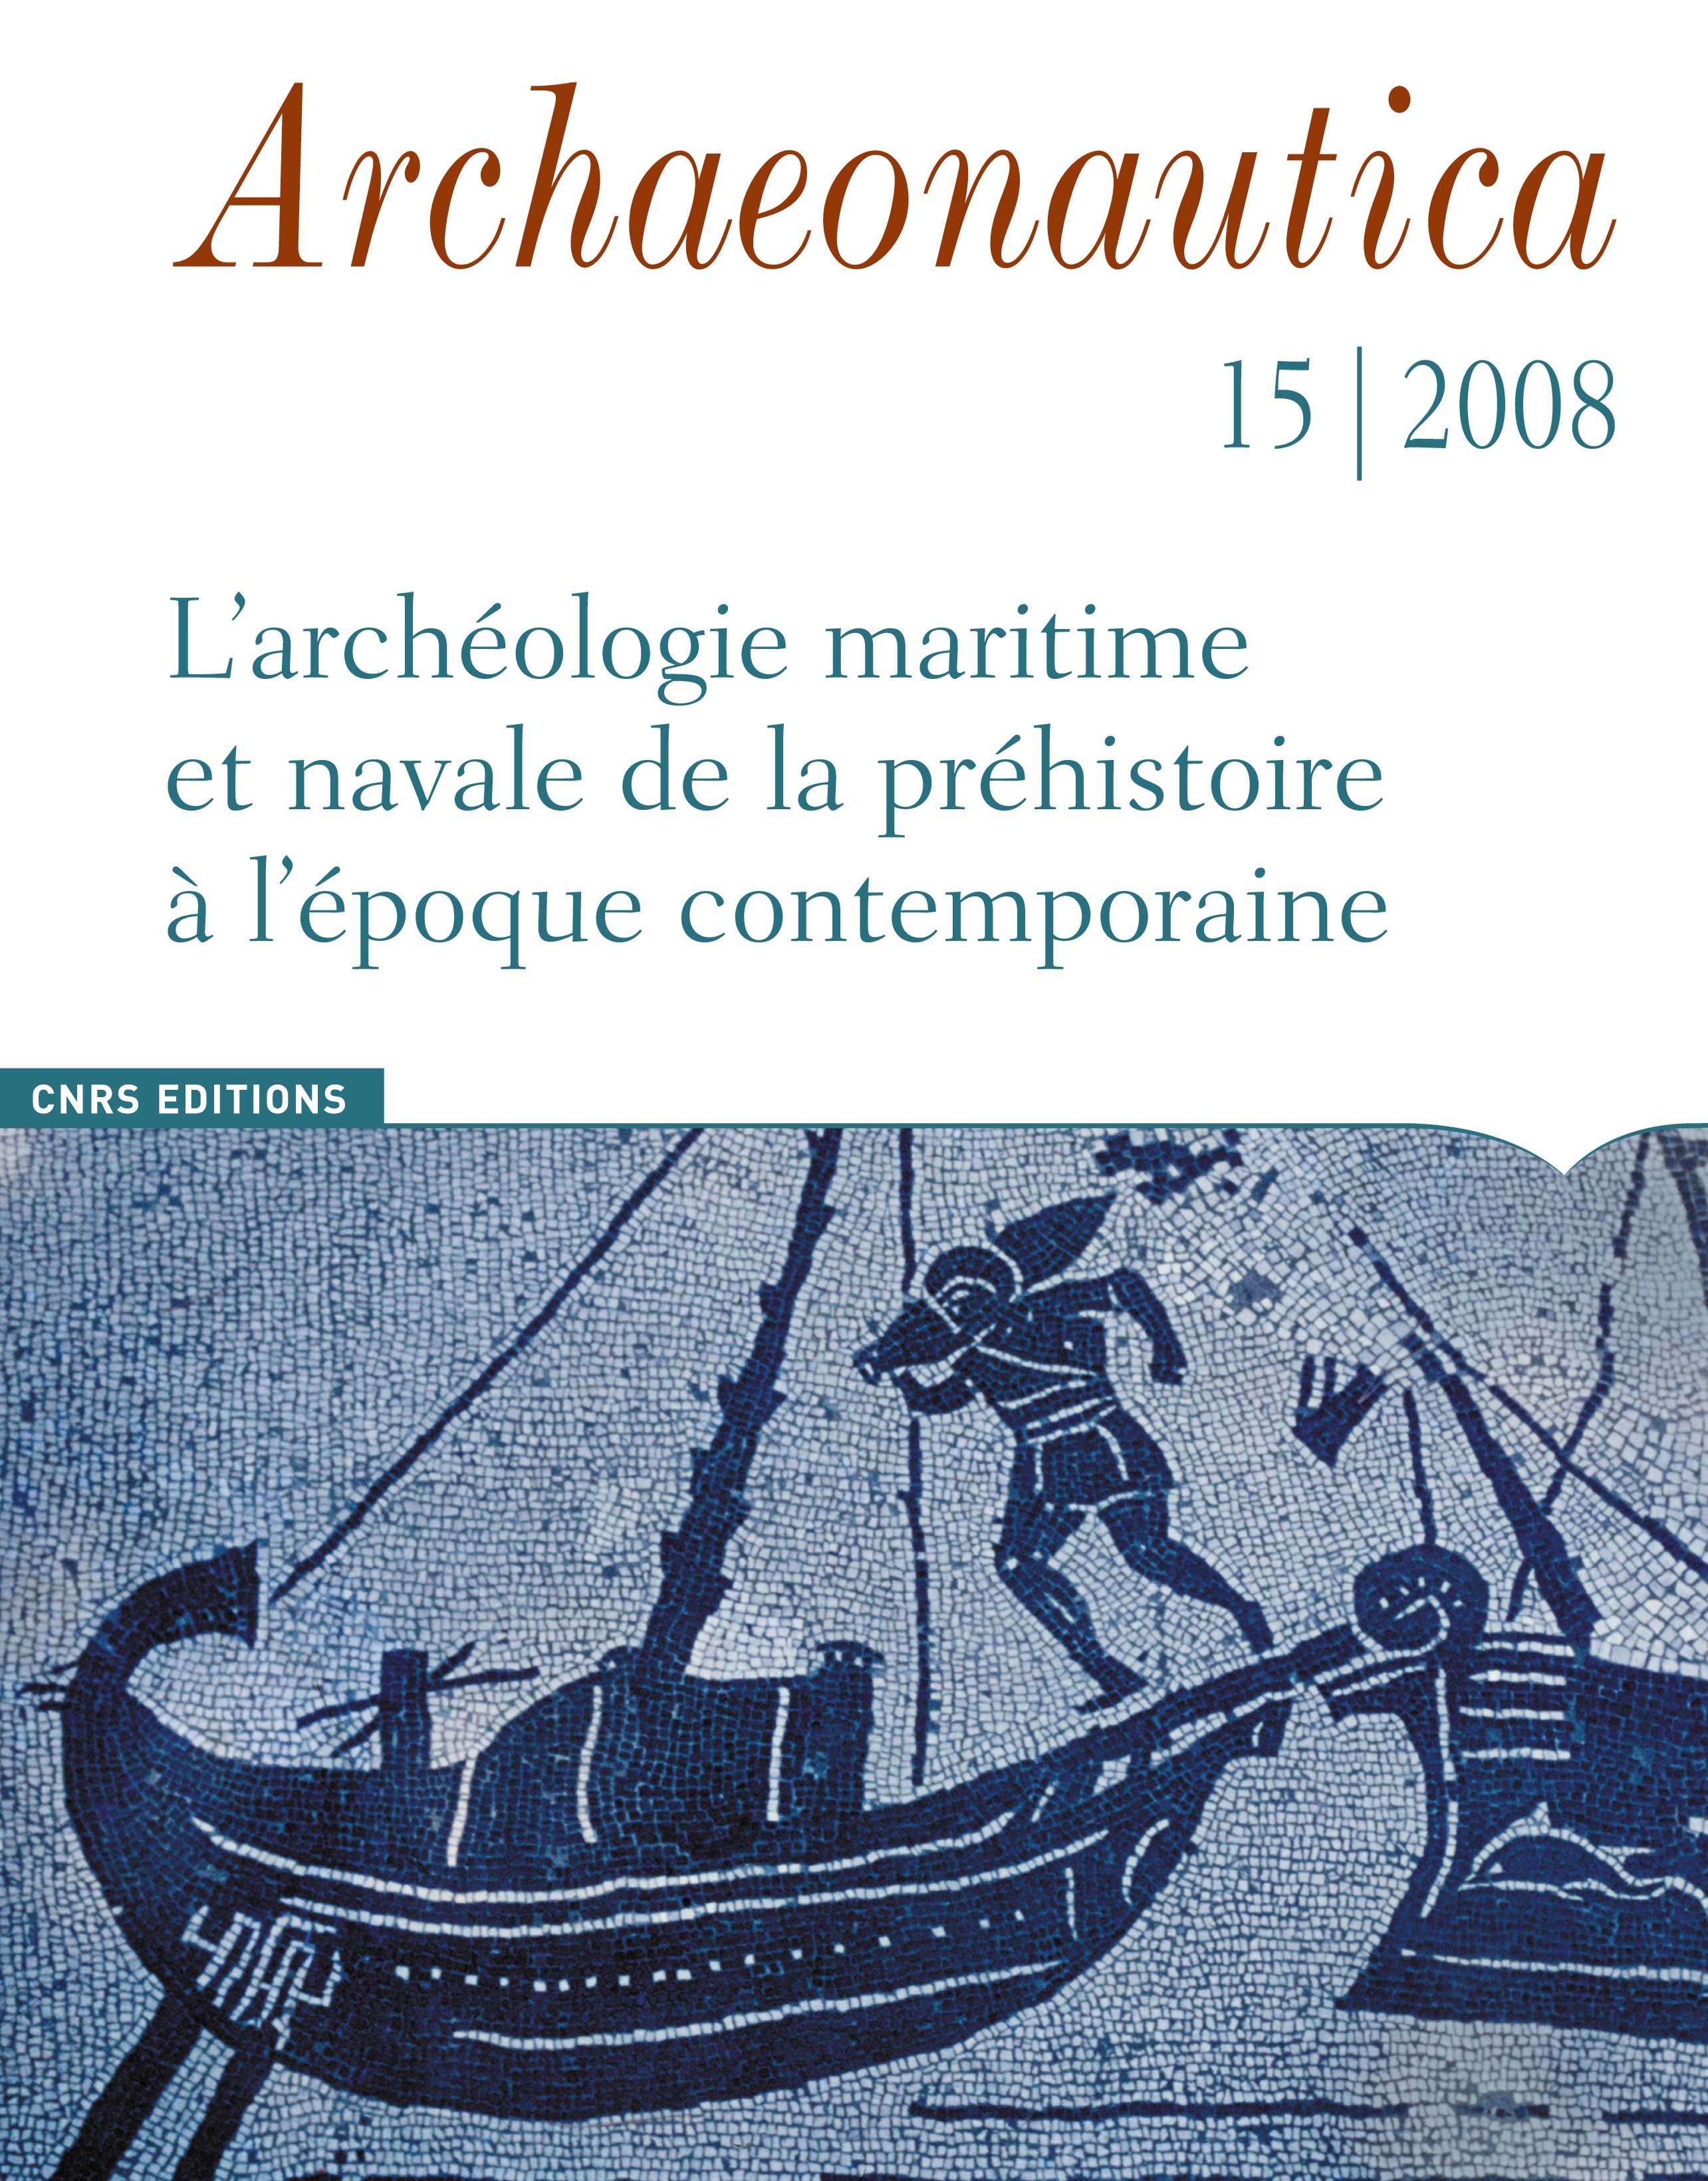 15, 2008. L'archéologie maritime et navale de la préhistoire à l'époque contemporaine, (dir. P. Pomey), 196 p.